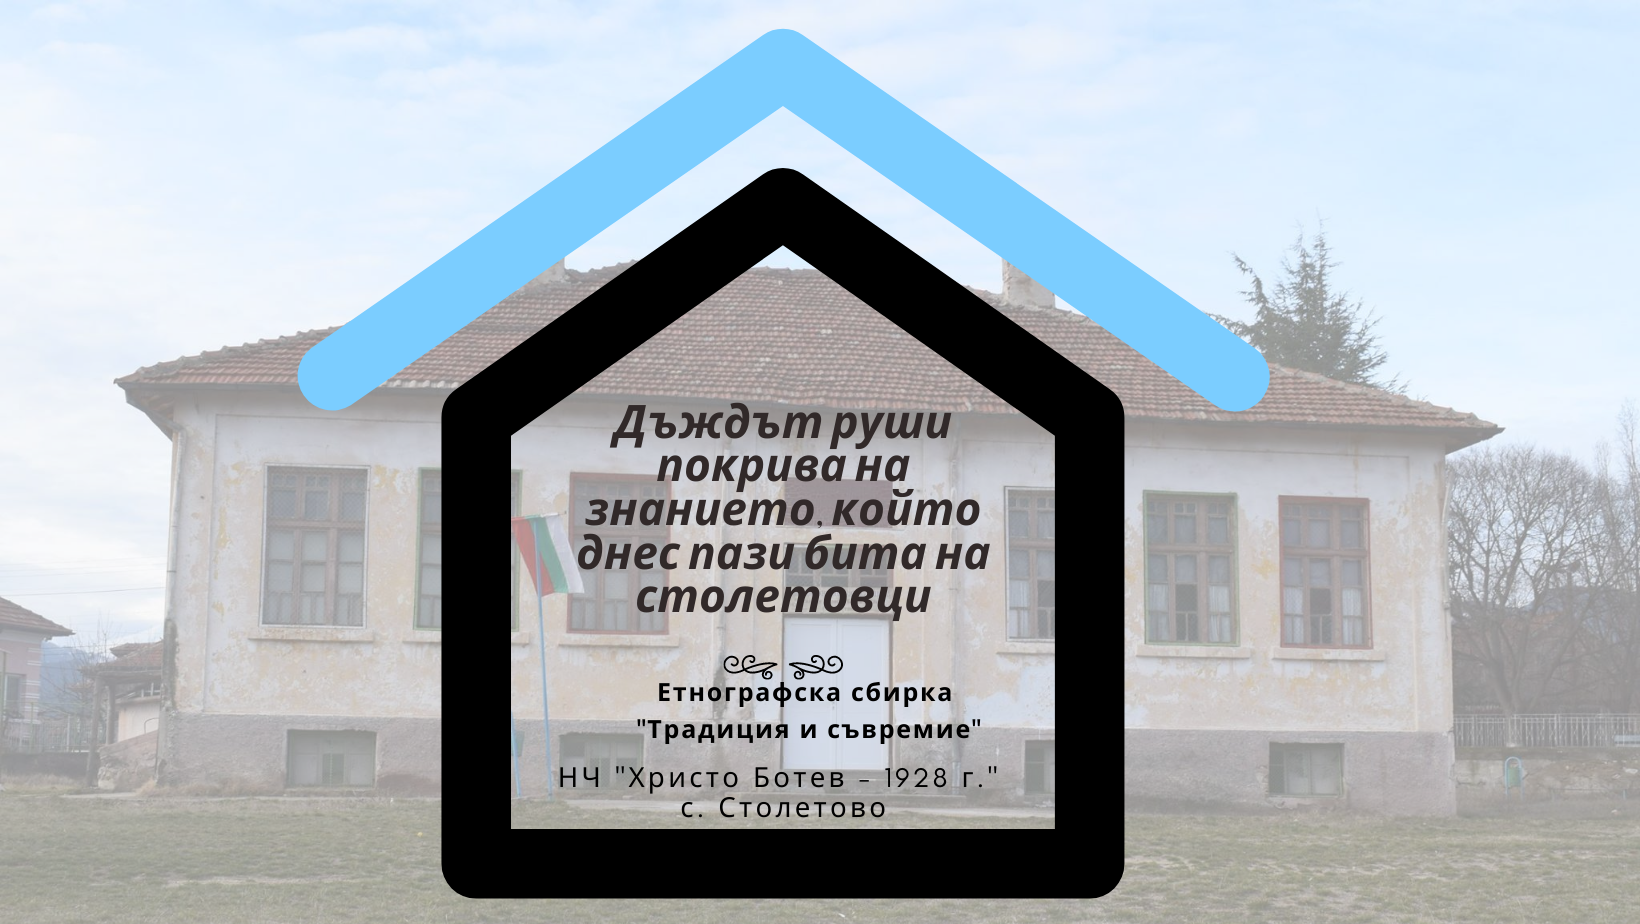 Читалището в Столетово започва дарителска кампания за ремонт на покрива на старото училище